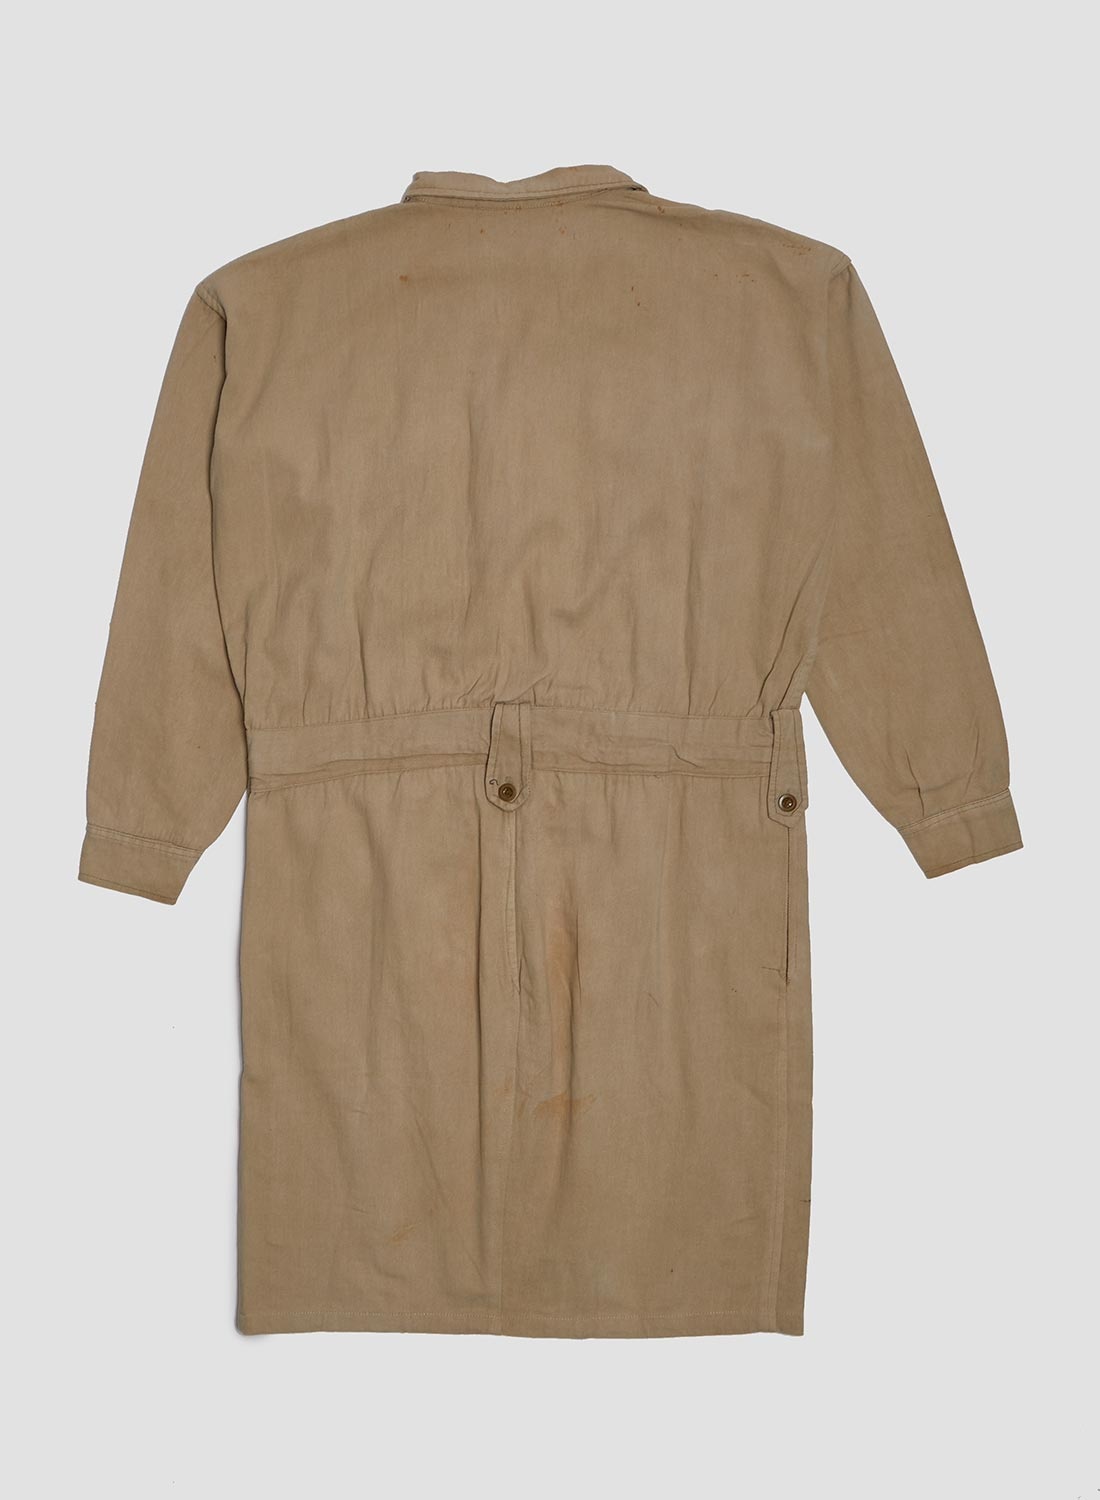 Puebco Shop Coat in Size 2 - 5